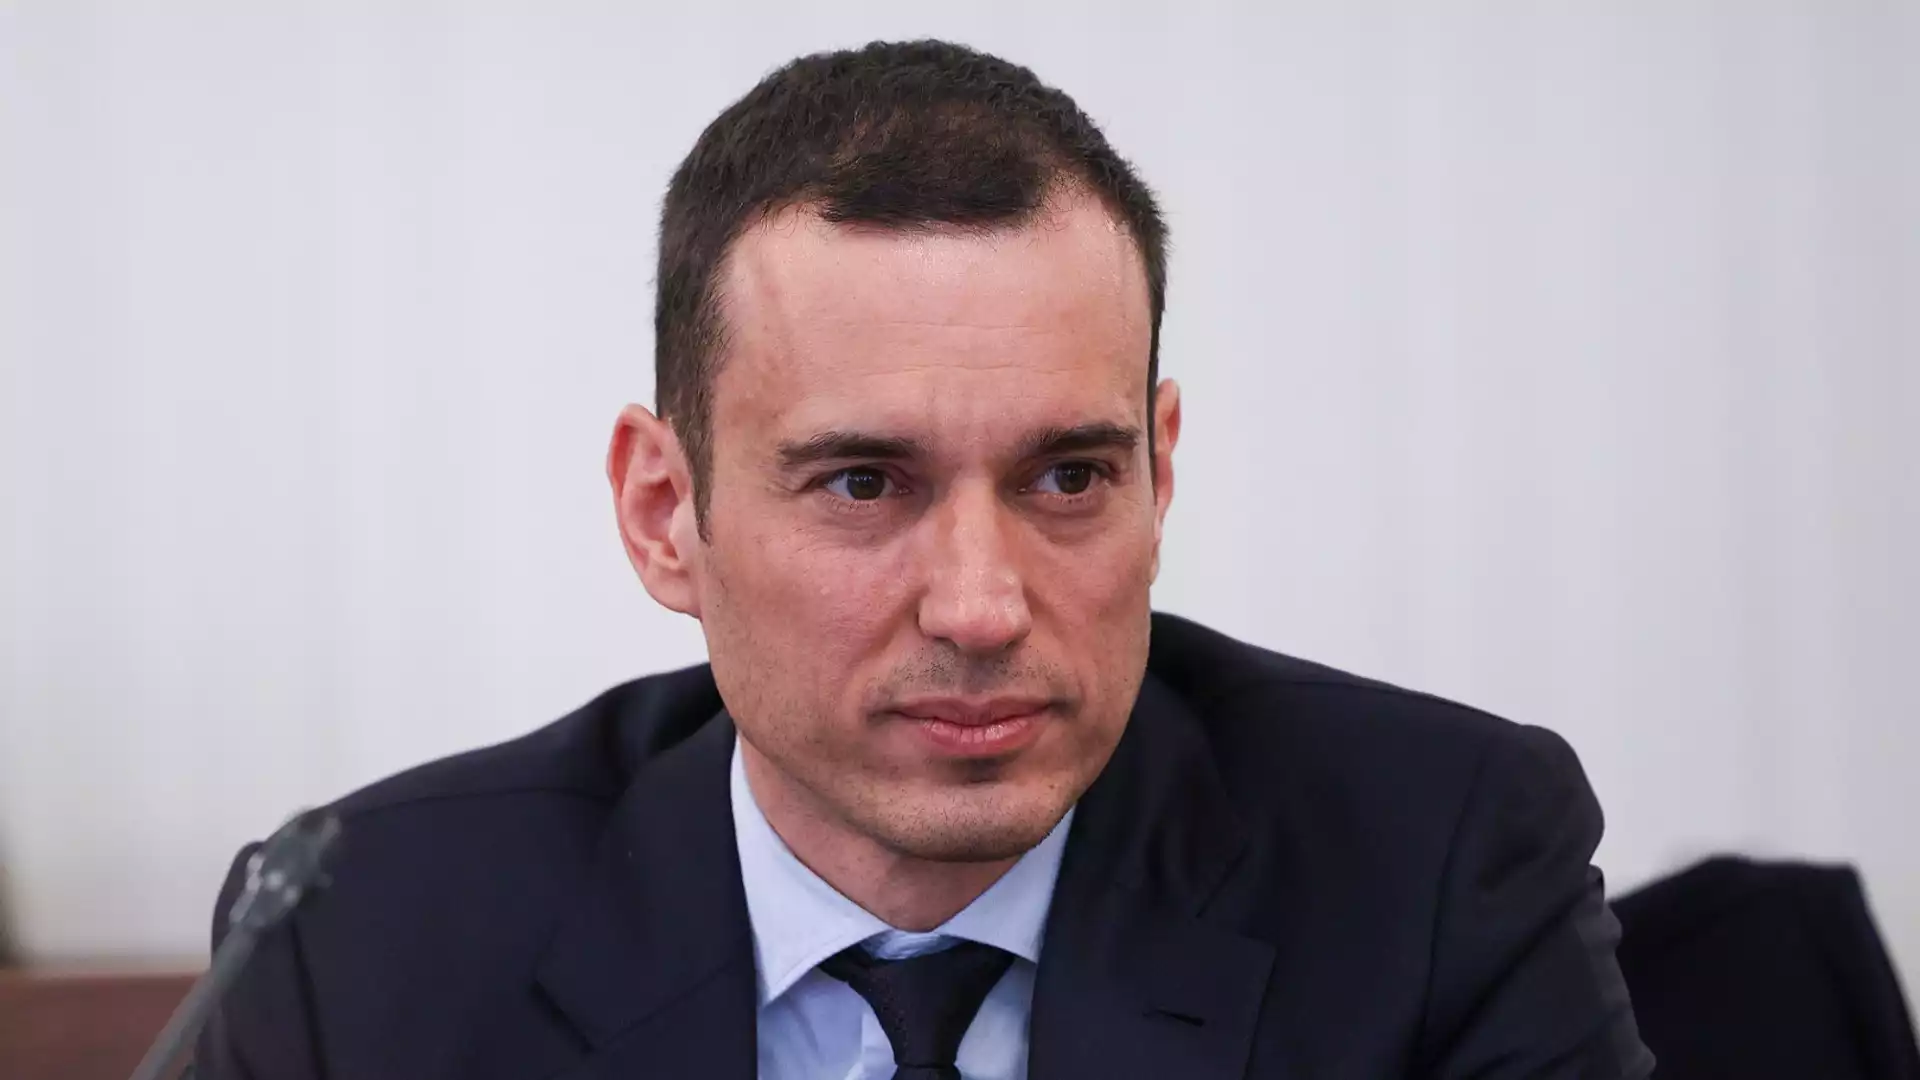 Васил Терзиев ще убеждава работещите в Столична община да не гласуват партийно